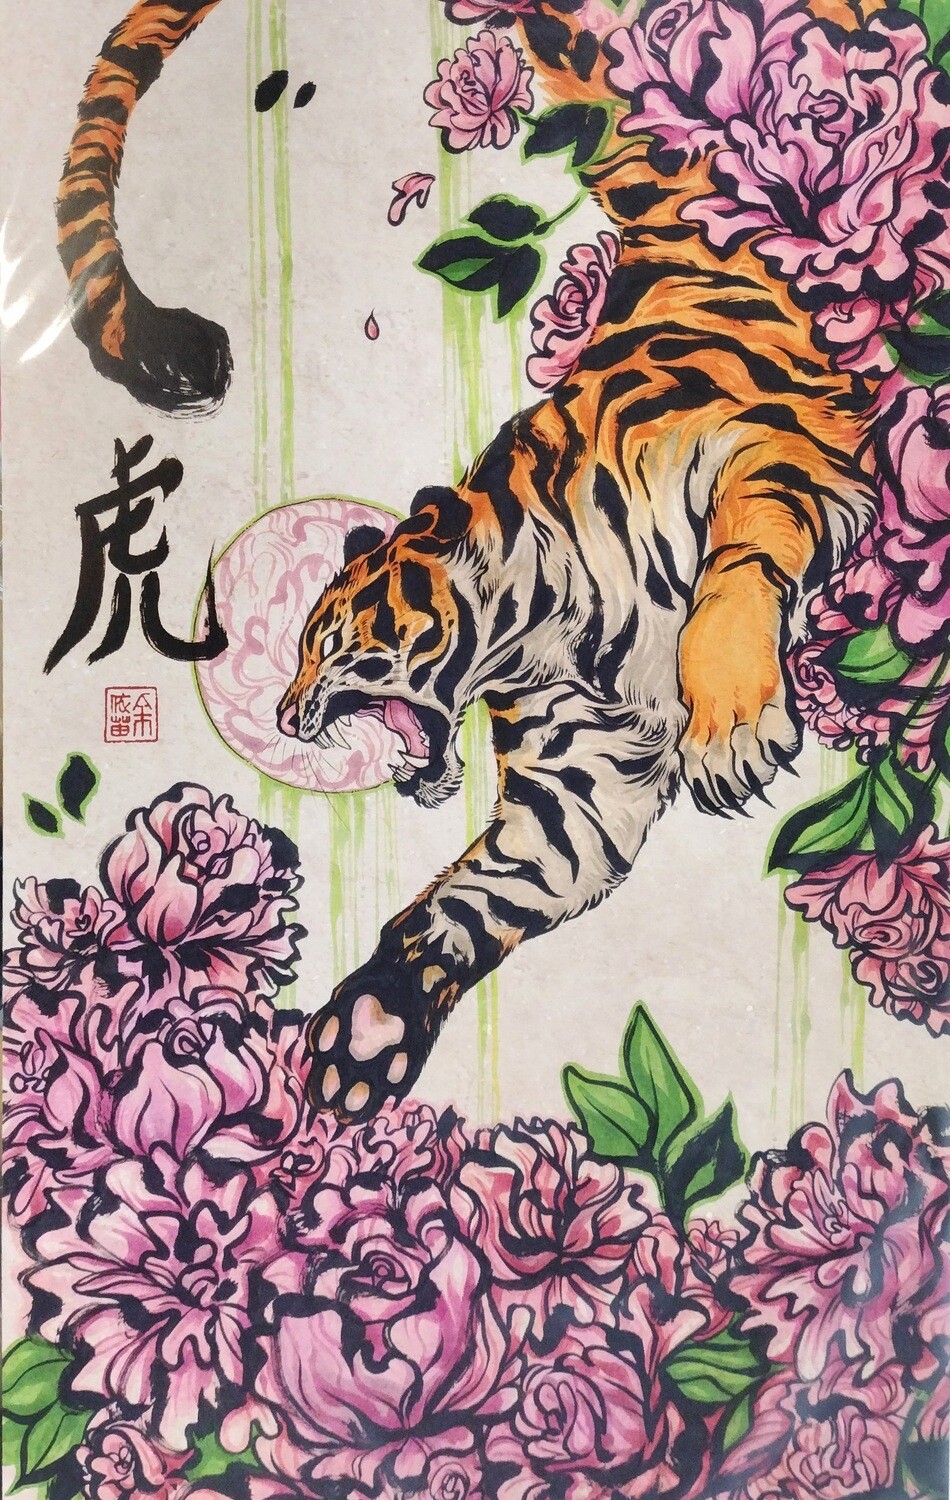 Tiger - Print by Kiriska